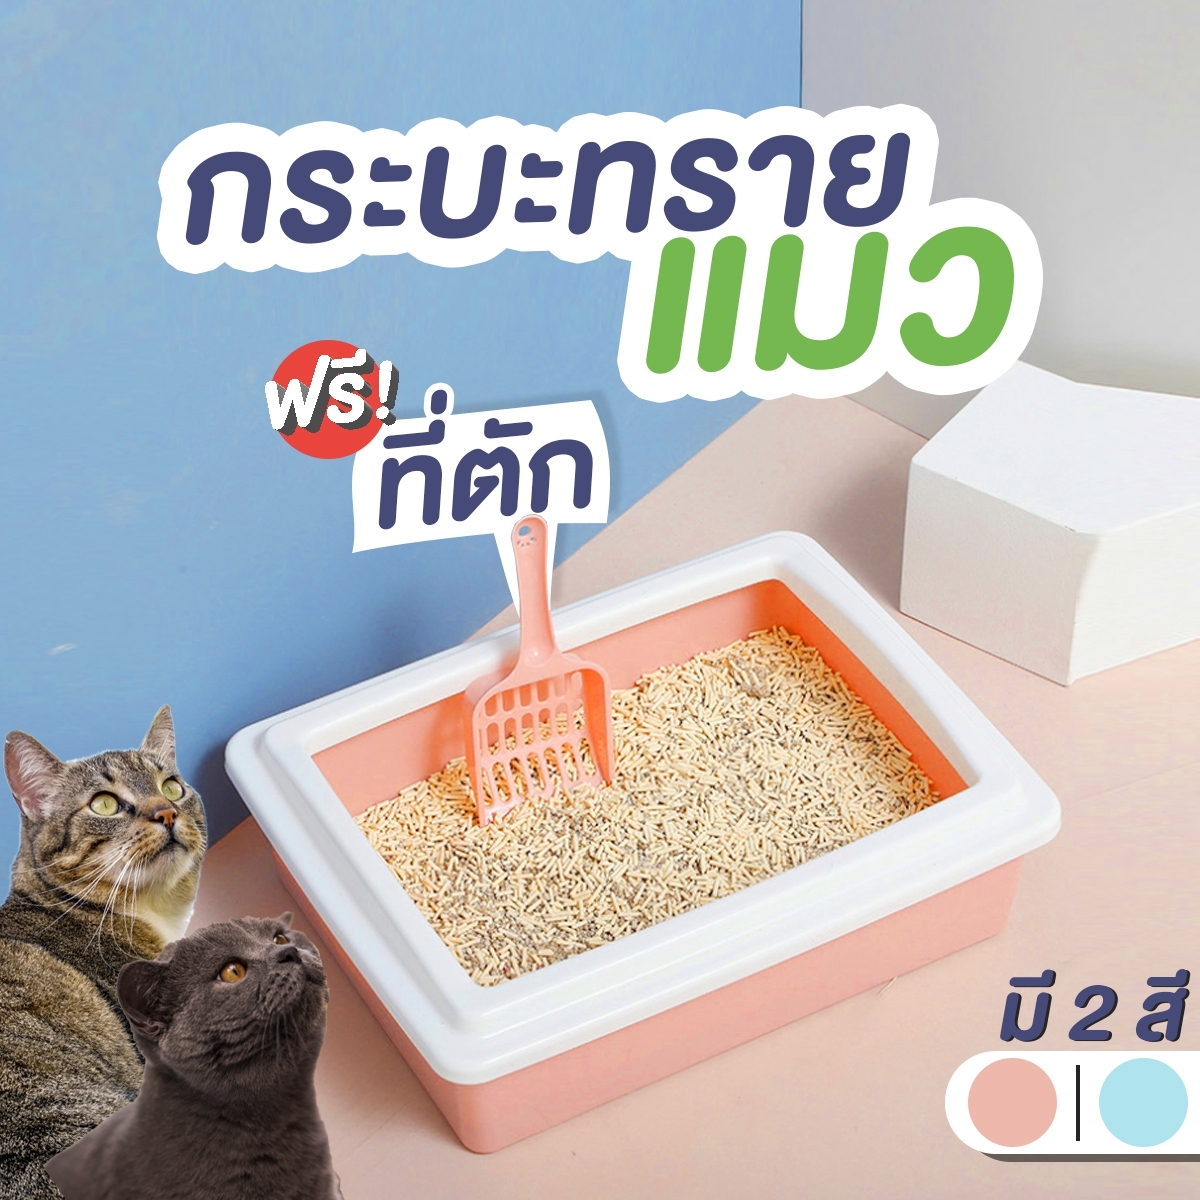 ห้องน้ำแมว กระบะทรายแมว ห้องน้ำกระบะทรายแมว กระบะทรายแมวสำหรับแมวทุกวัย ห้องน้ำแมวแบบกระบะทรายแมว  ห้องน้ำ กระบะทรายแมวพร้อมที่ตัก สีชมพูโอโรสด์/ขาว